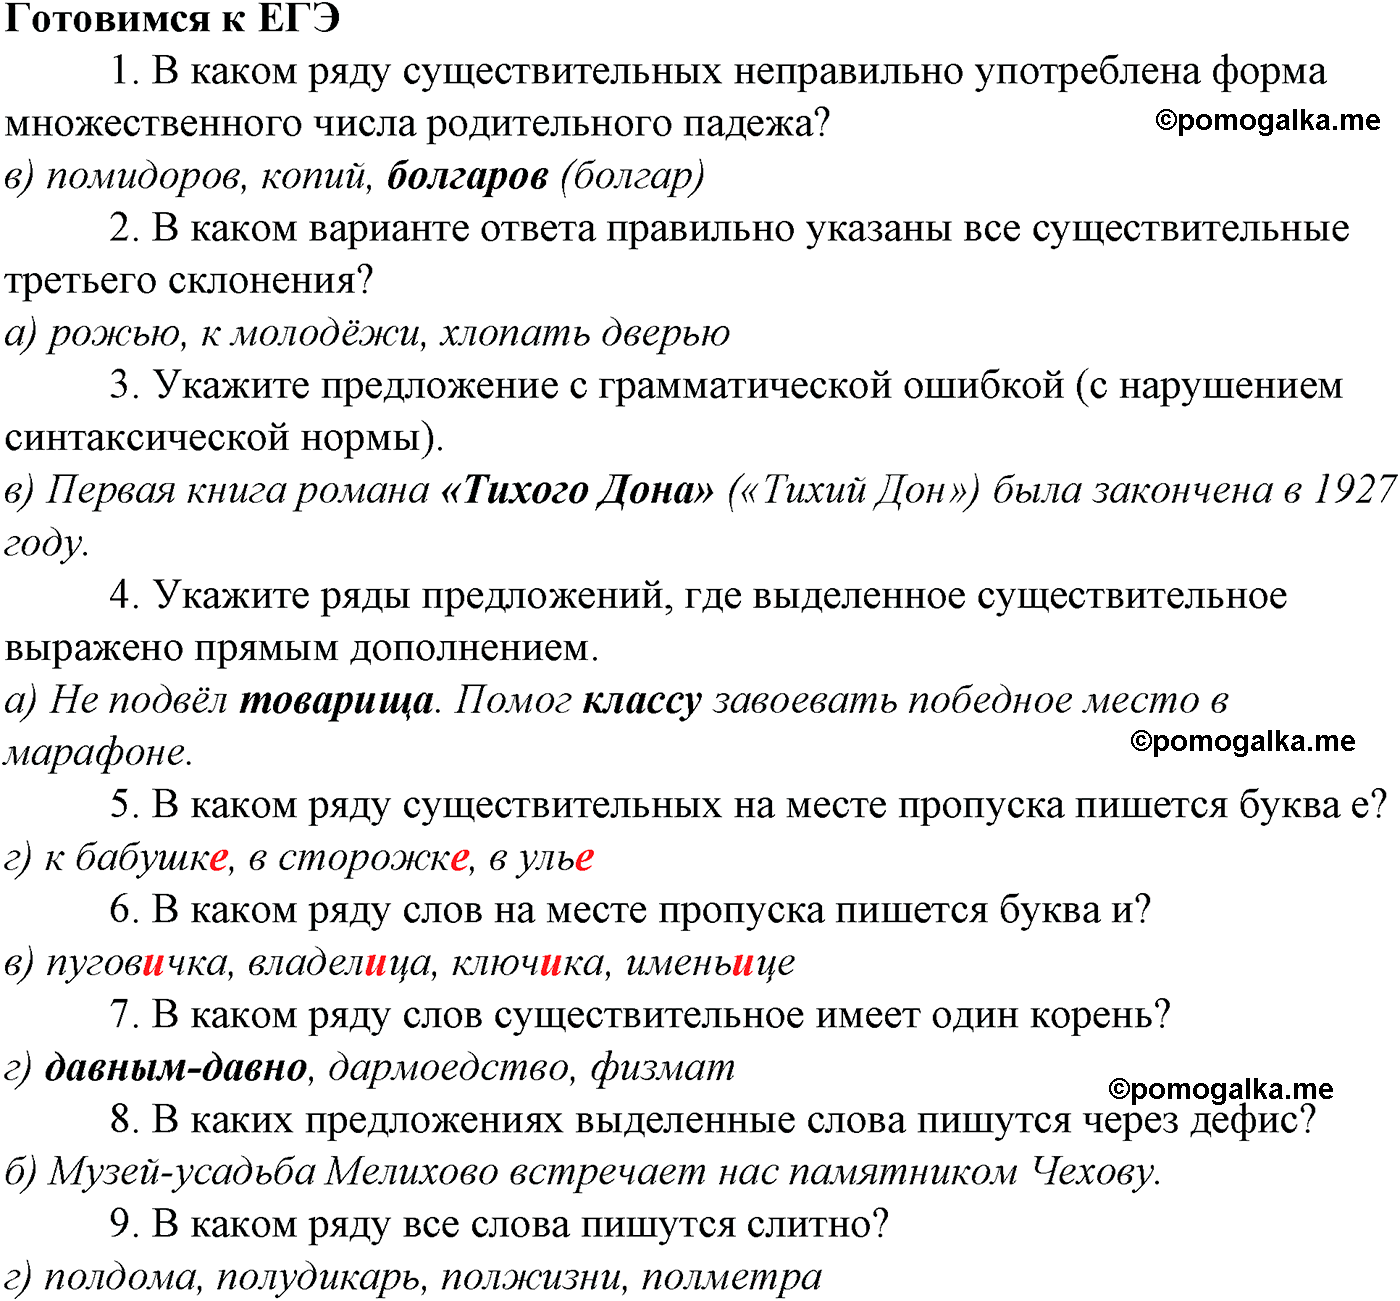 Готовимся к ЕГЭ русский язык 10-11 класс Гольцова